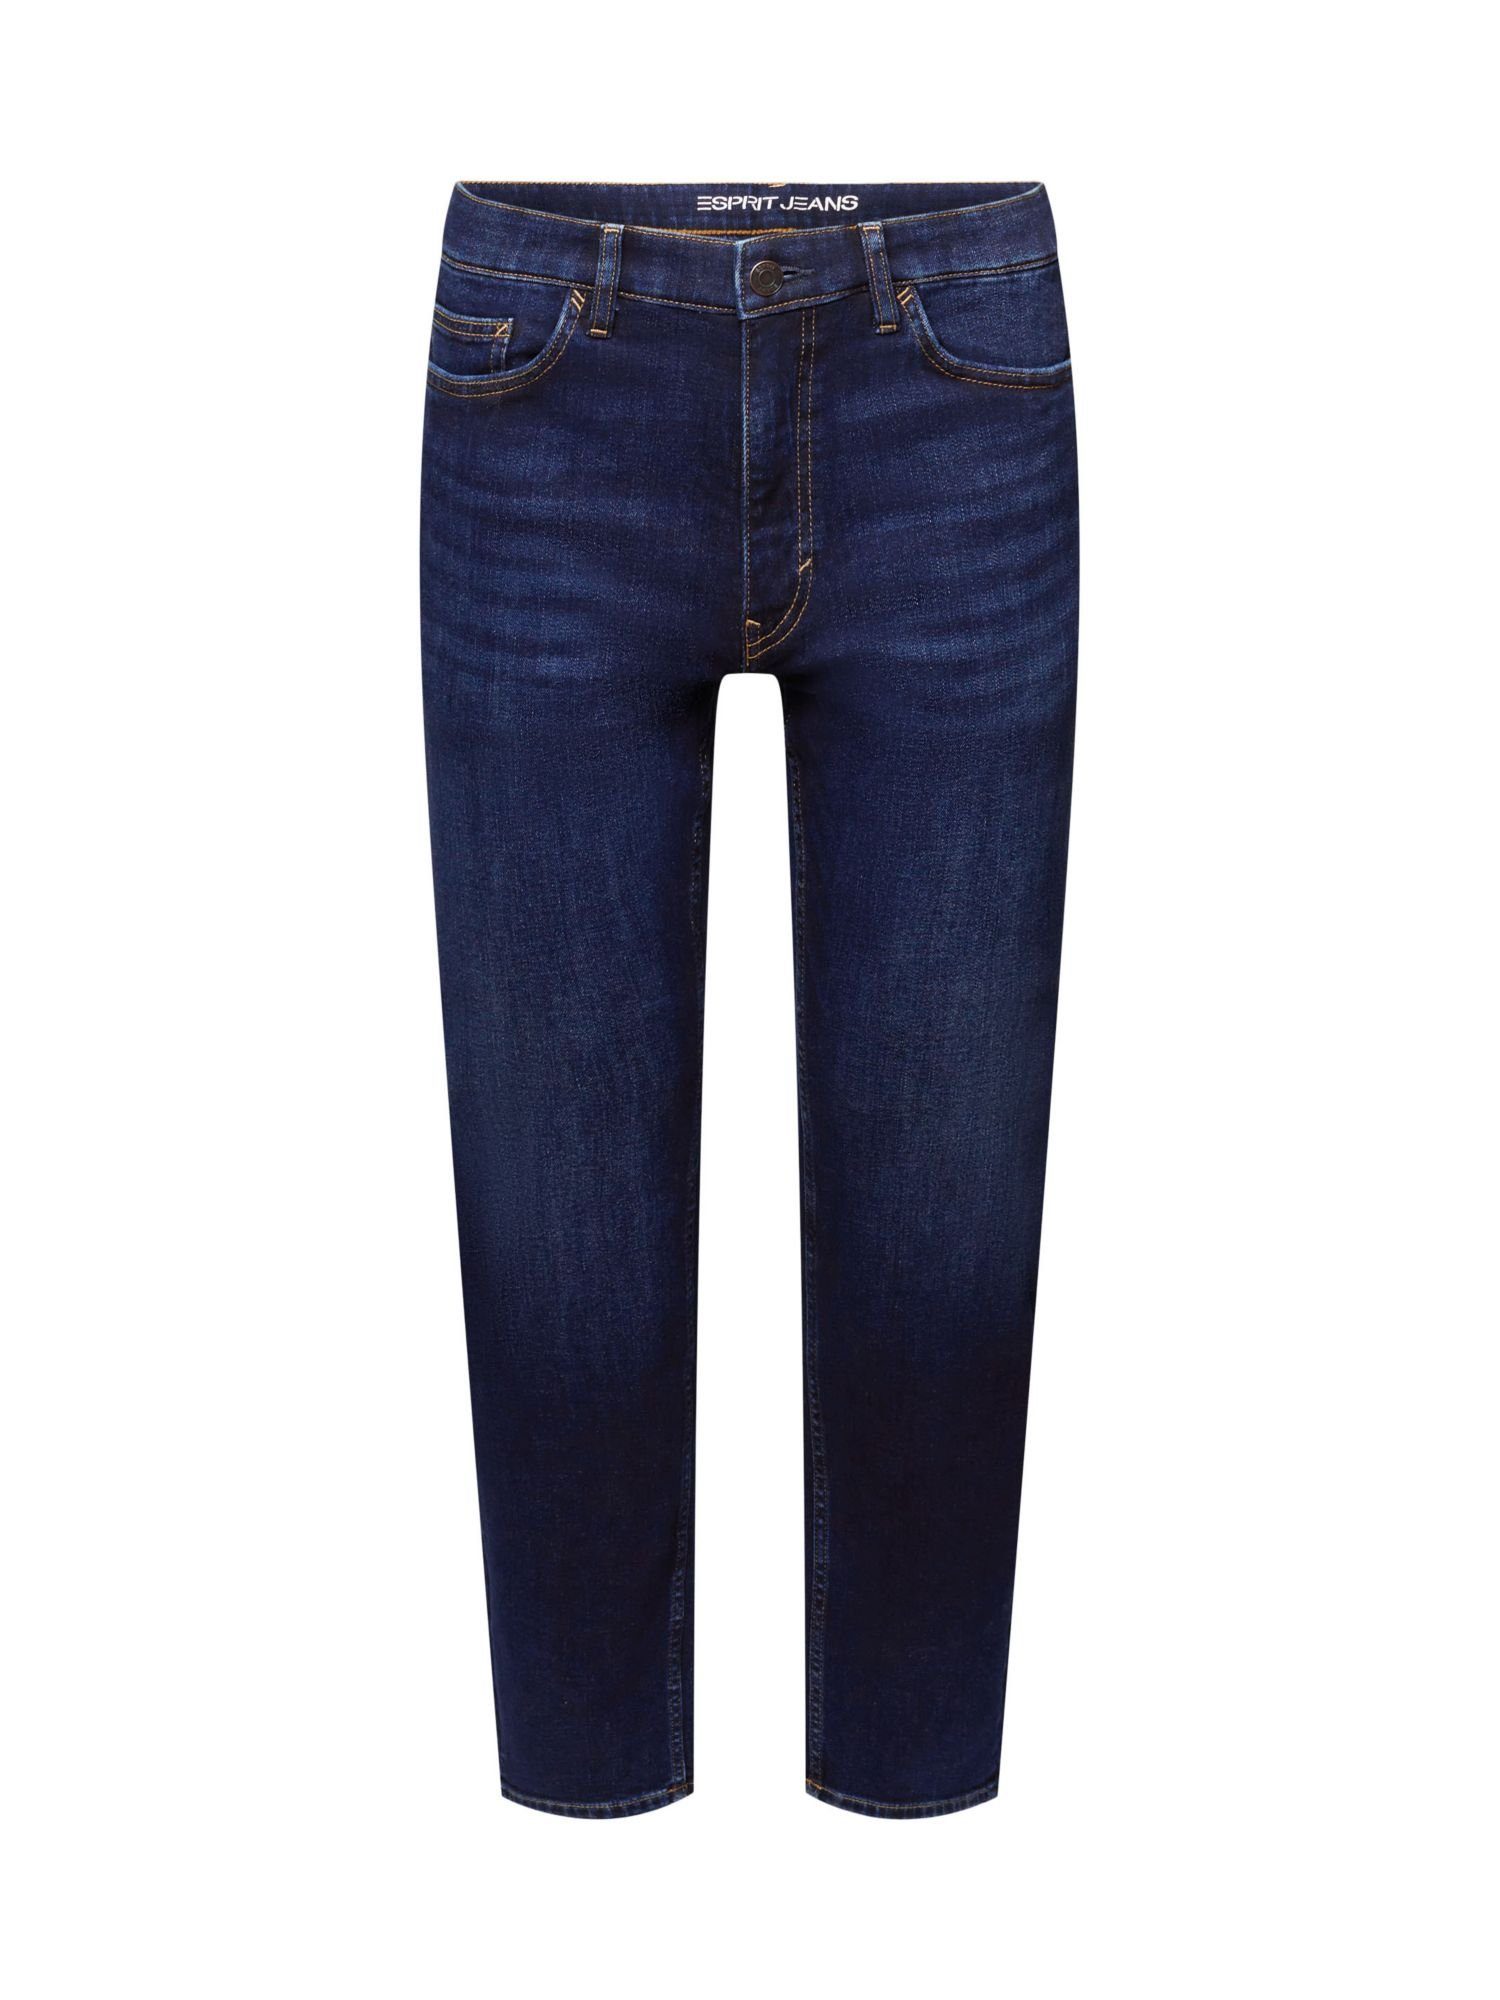 Esprit Straight-Jeans Jeans mit geradem Bein, Baumwollstretch